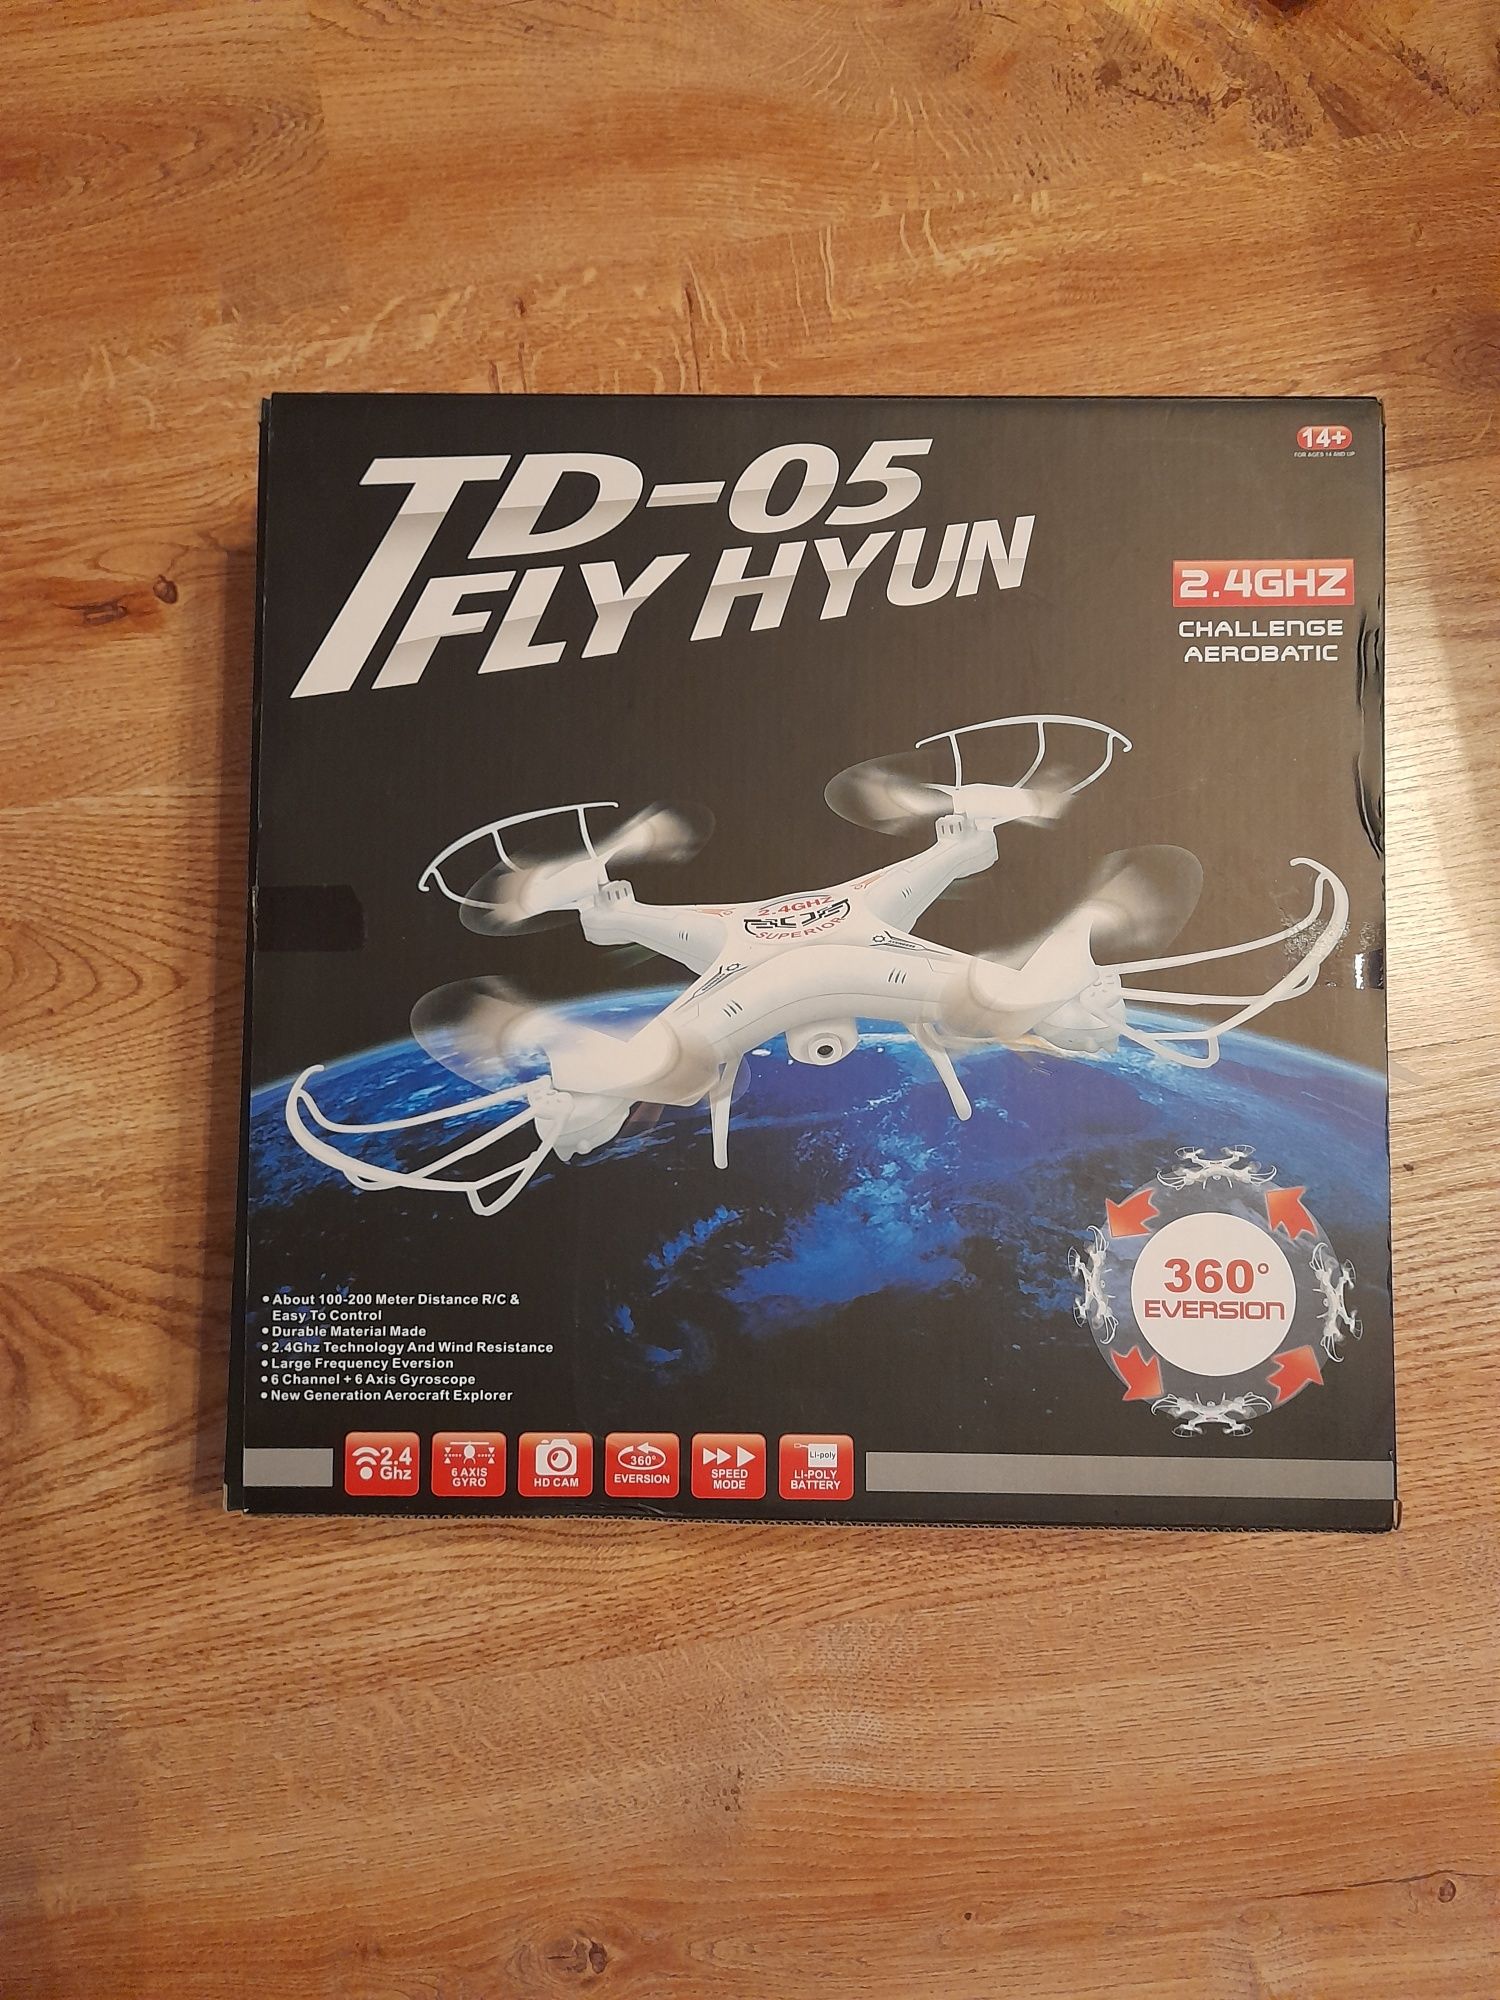 Dron td-05 fly hyun